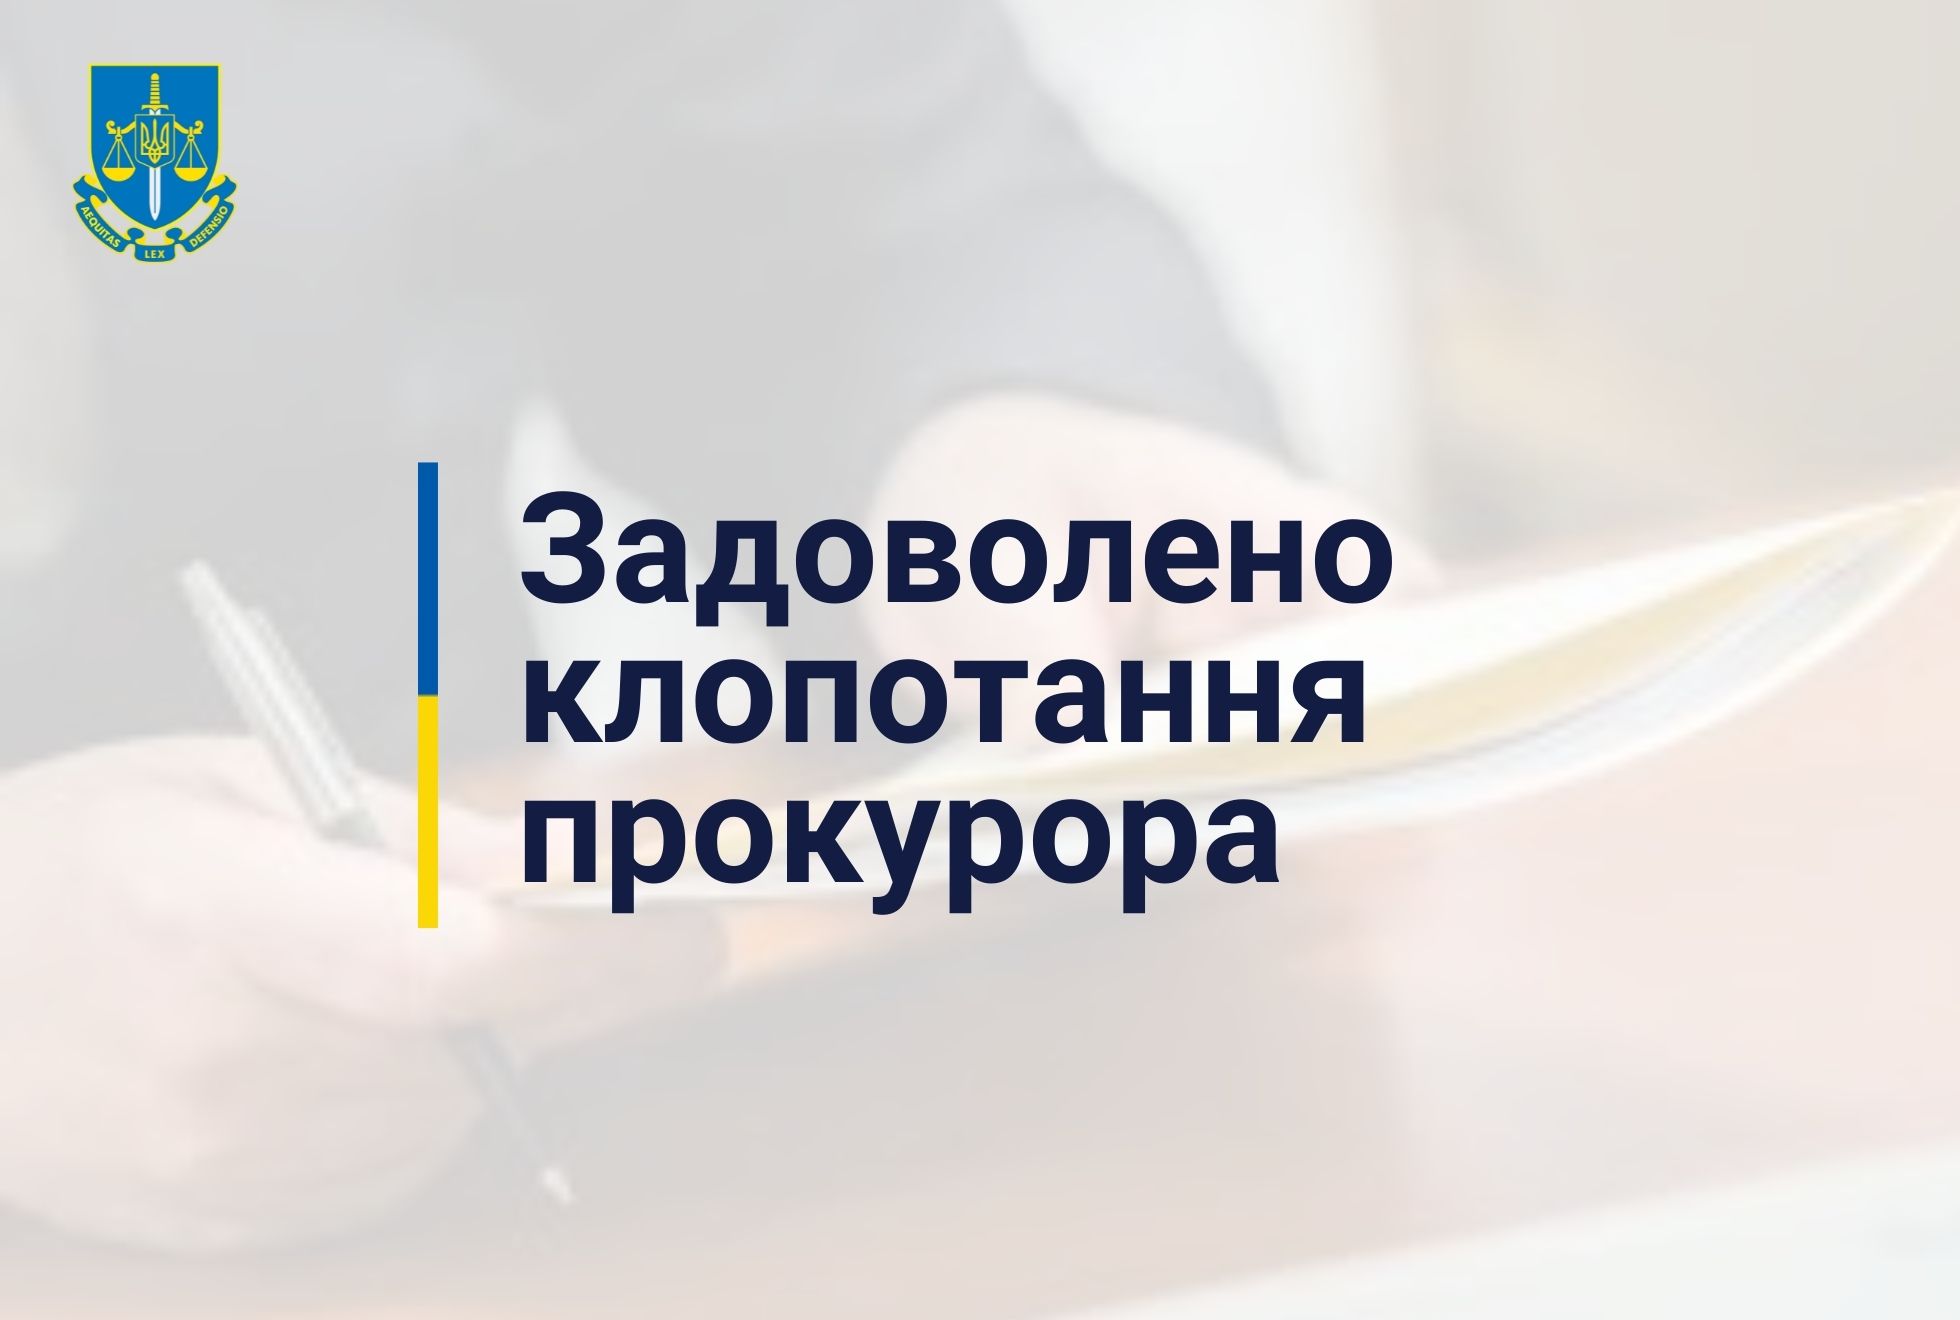 Завдяки прокурорам 10 млн грн застави ексголови правління НАК «Нафтогаз України» звернуто в дохід держави